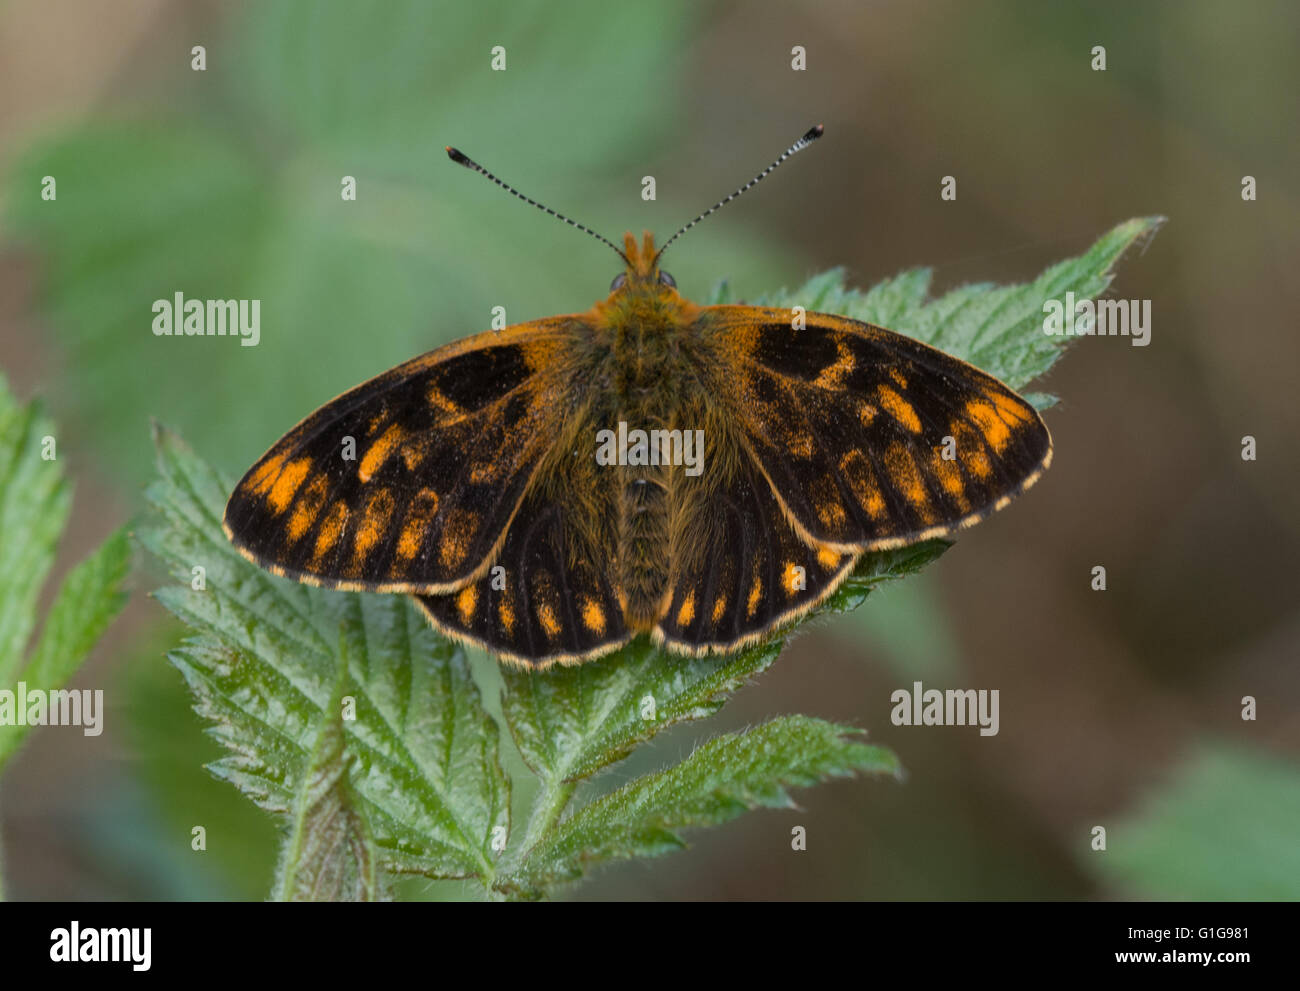 Aberrazione delle farfalle - rara forma aberrante di madreperla fiancheggiata da fritillary (Boloria euphrosye) nell'Hampshire, Regno Unito Foto Stock